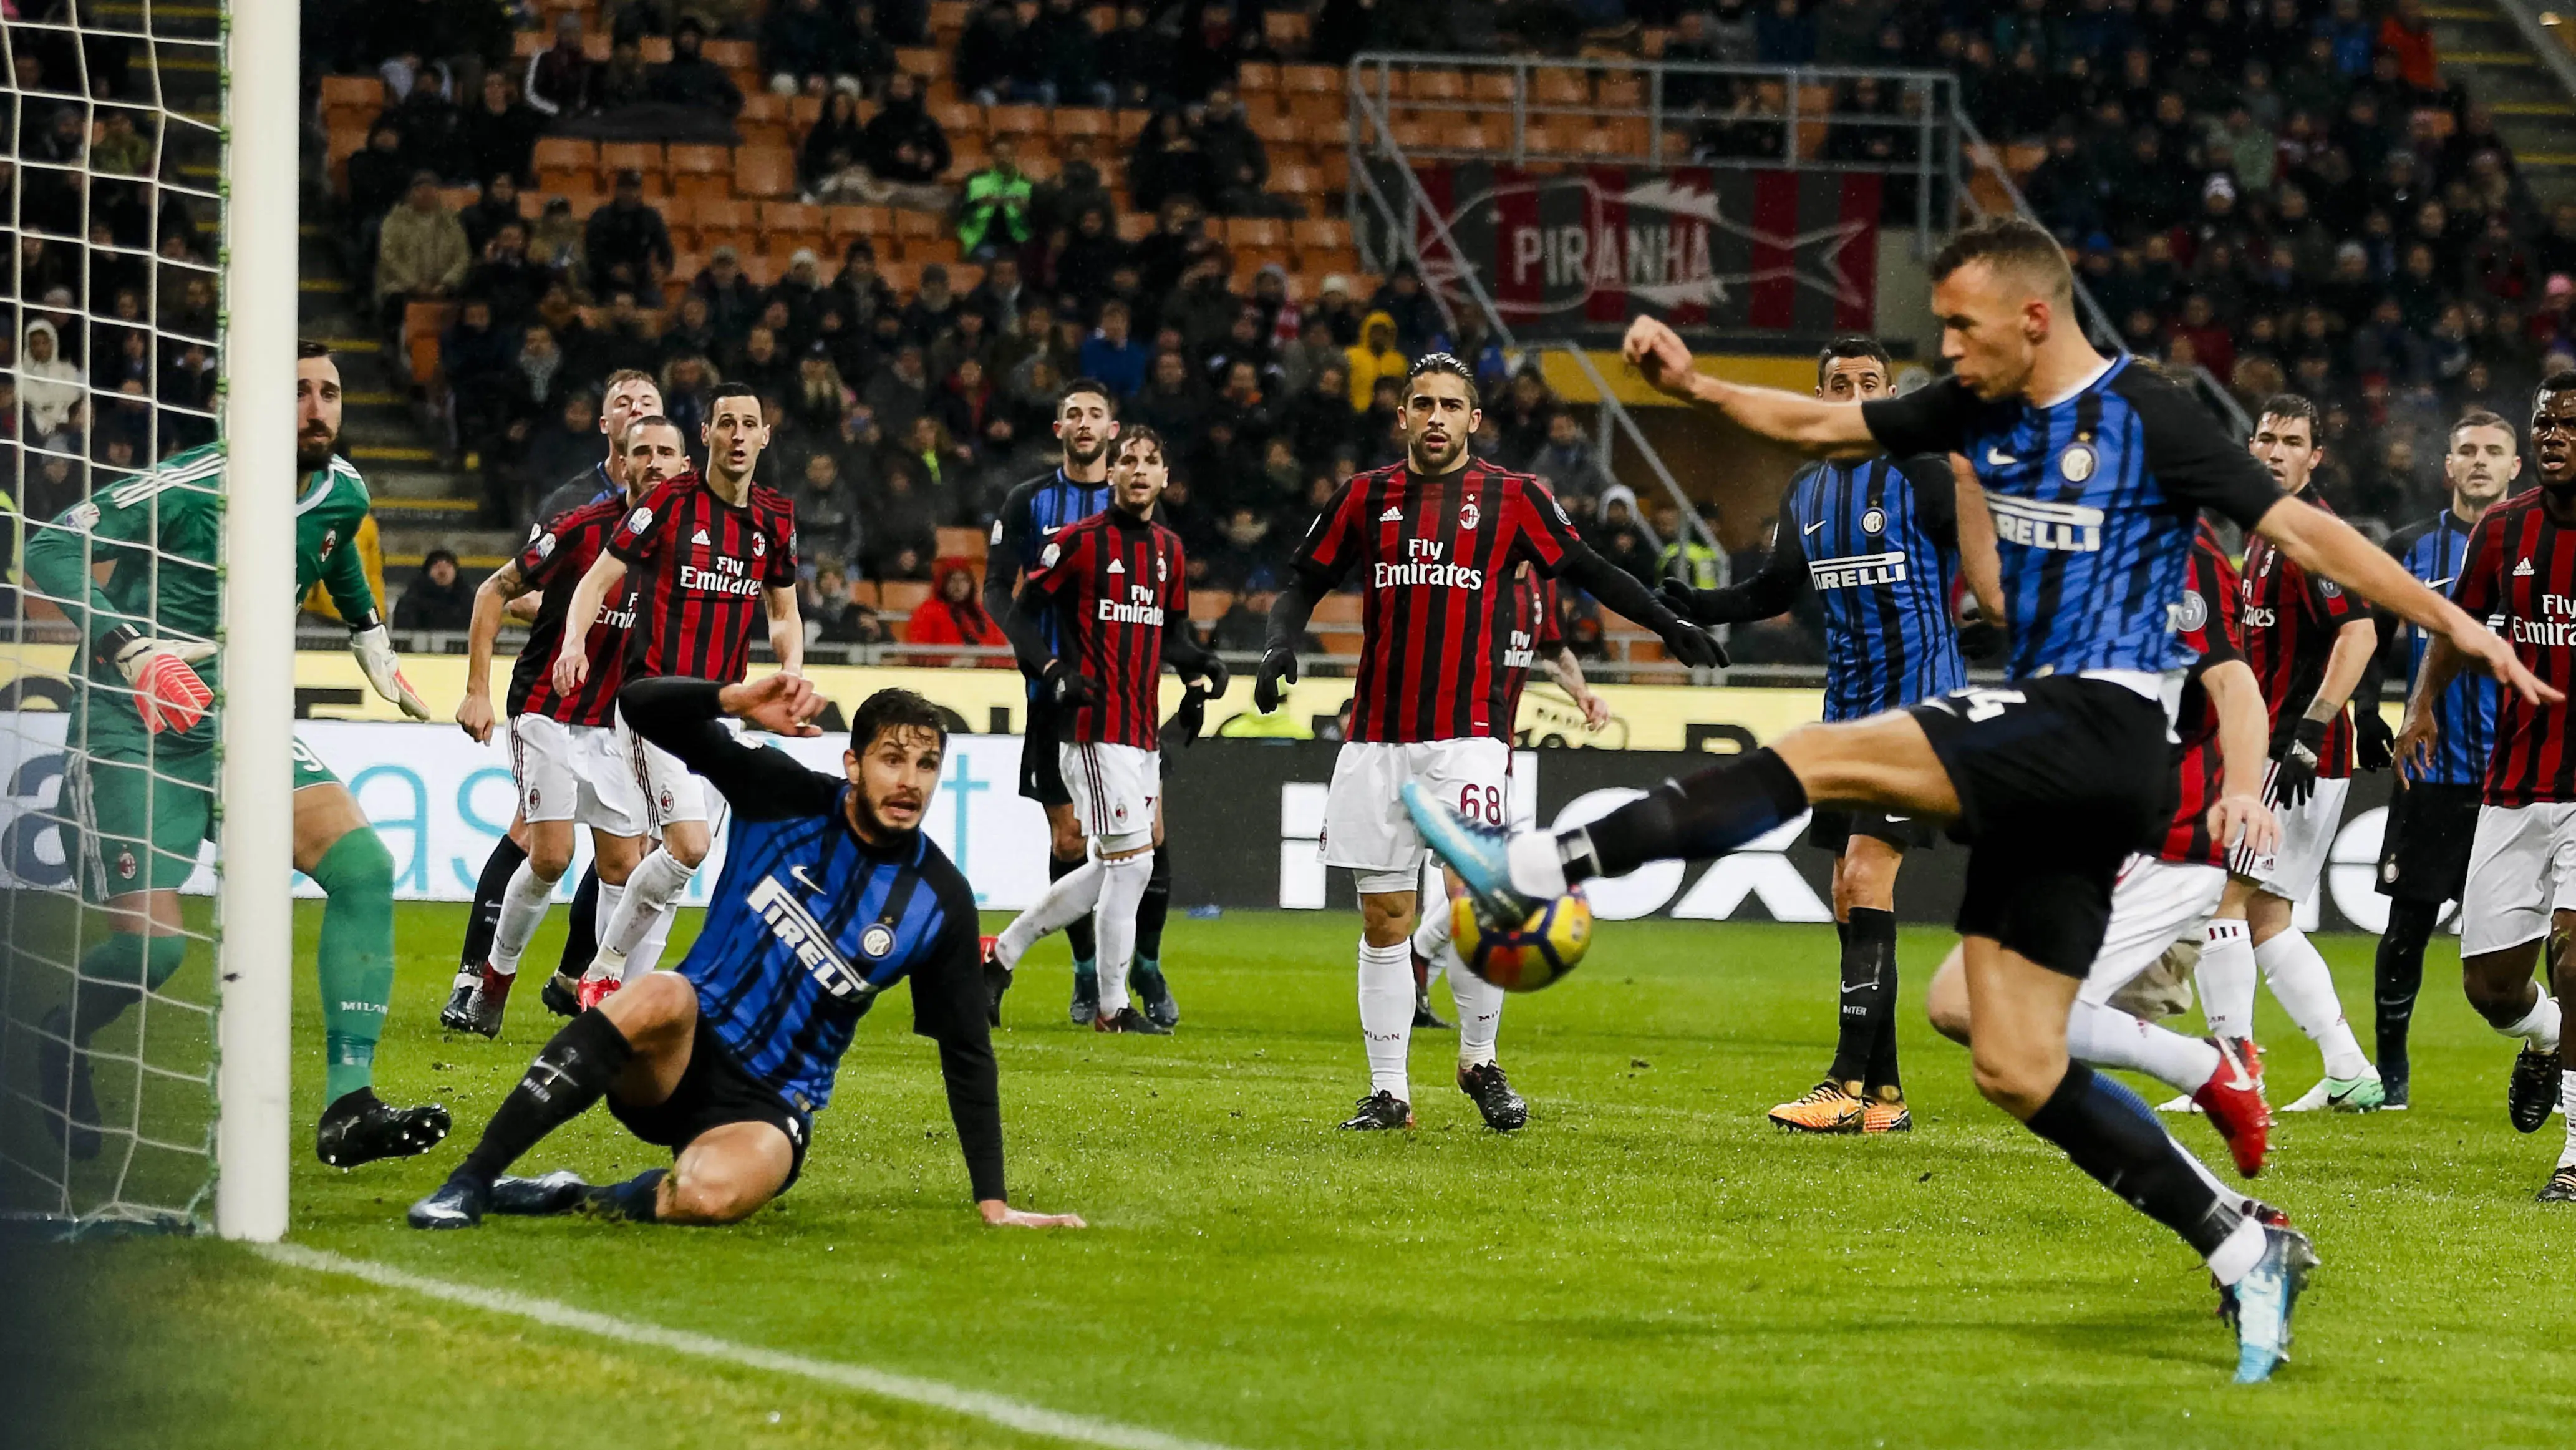 Gelandang Inter Milan, Ivan Perisic, melepaskan tendangan ke gawang AC Milan pada laga perempat final Coppa Italia di Stadion San Siro, Rabu (27/12/2017). AC Milan menang 1-0 atas Inter Milan. (AP/Antonio Calanni)